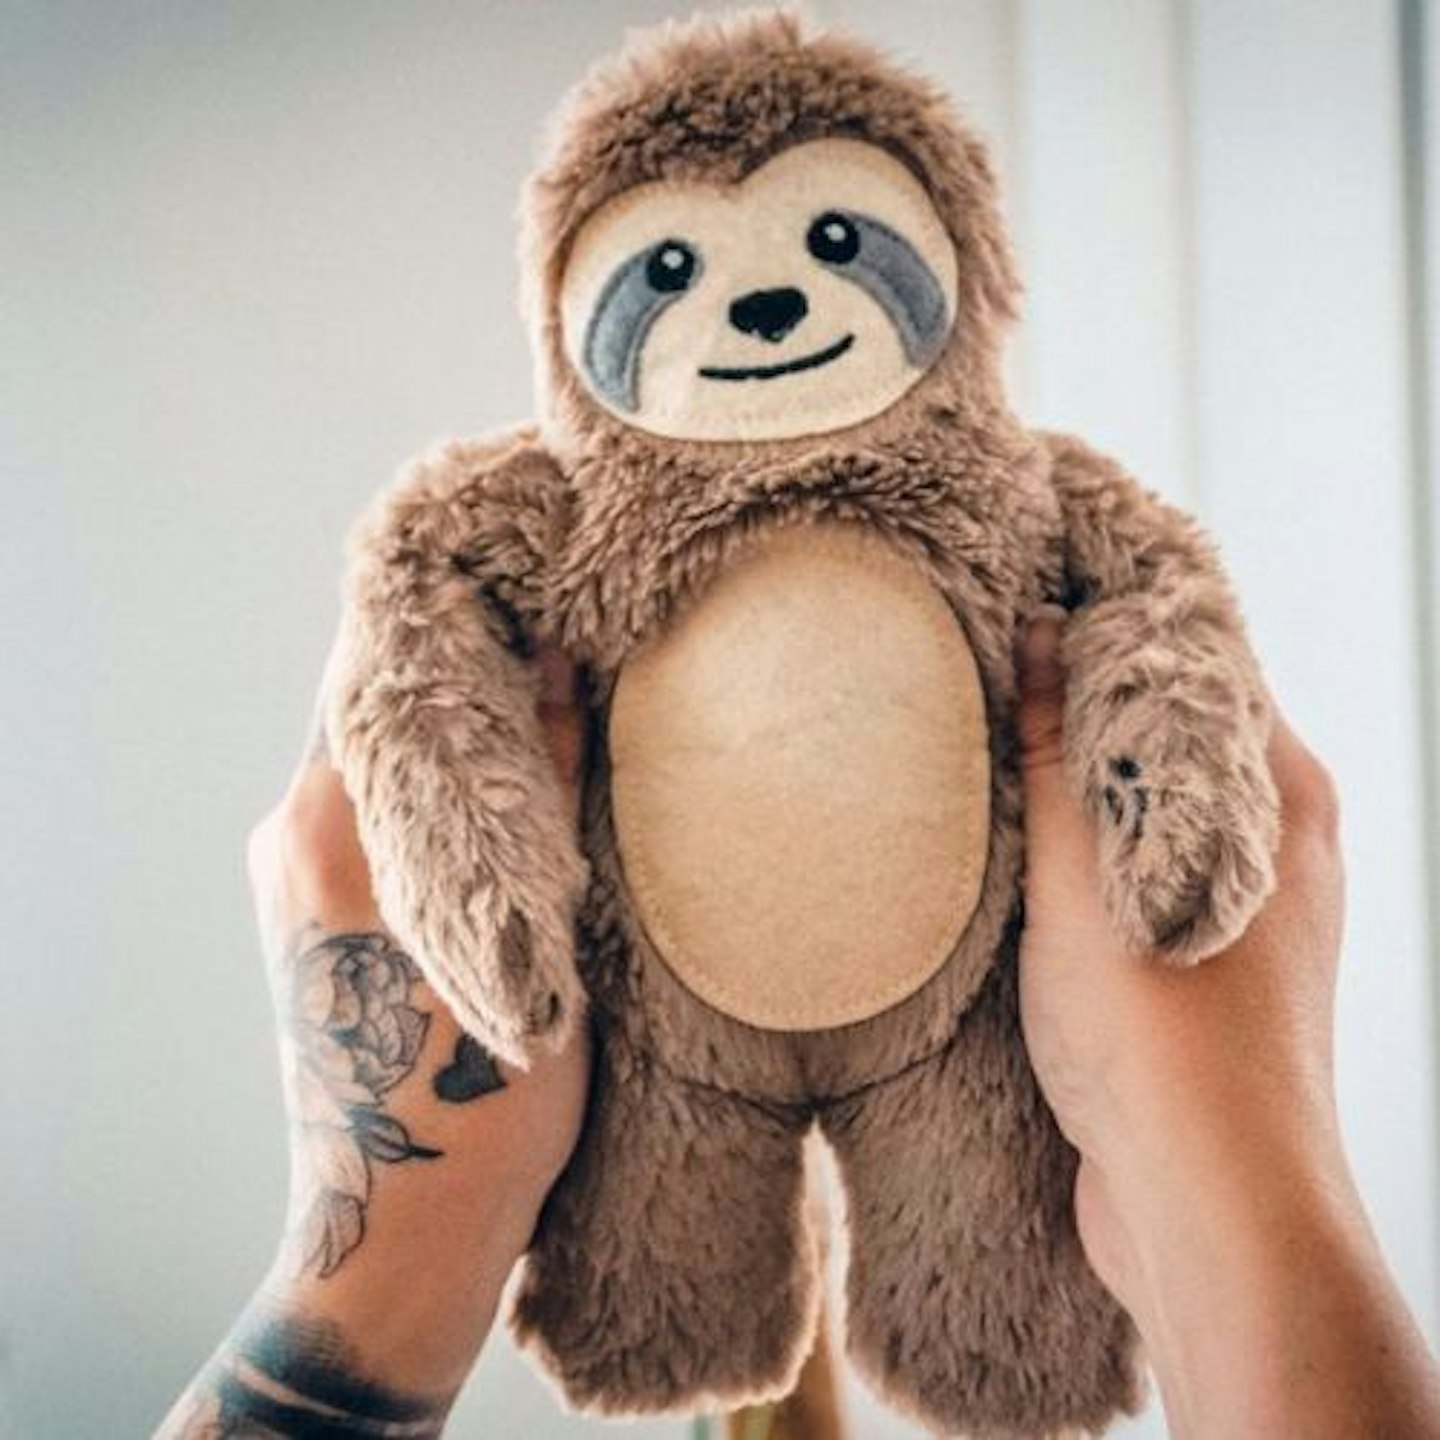 Heated Cuddly Sloth